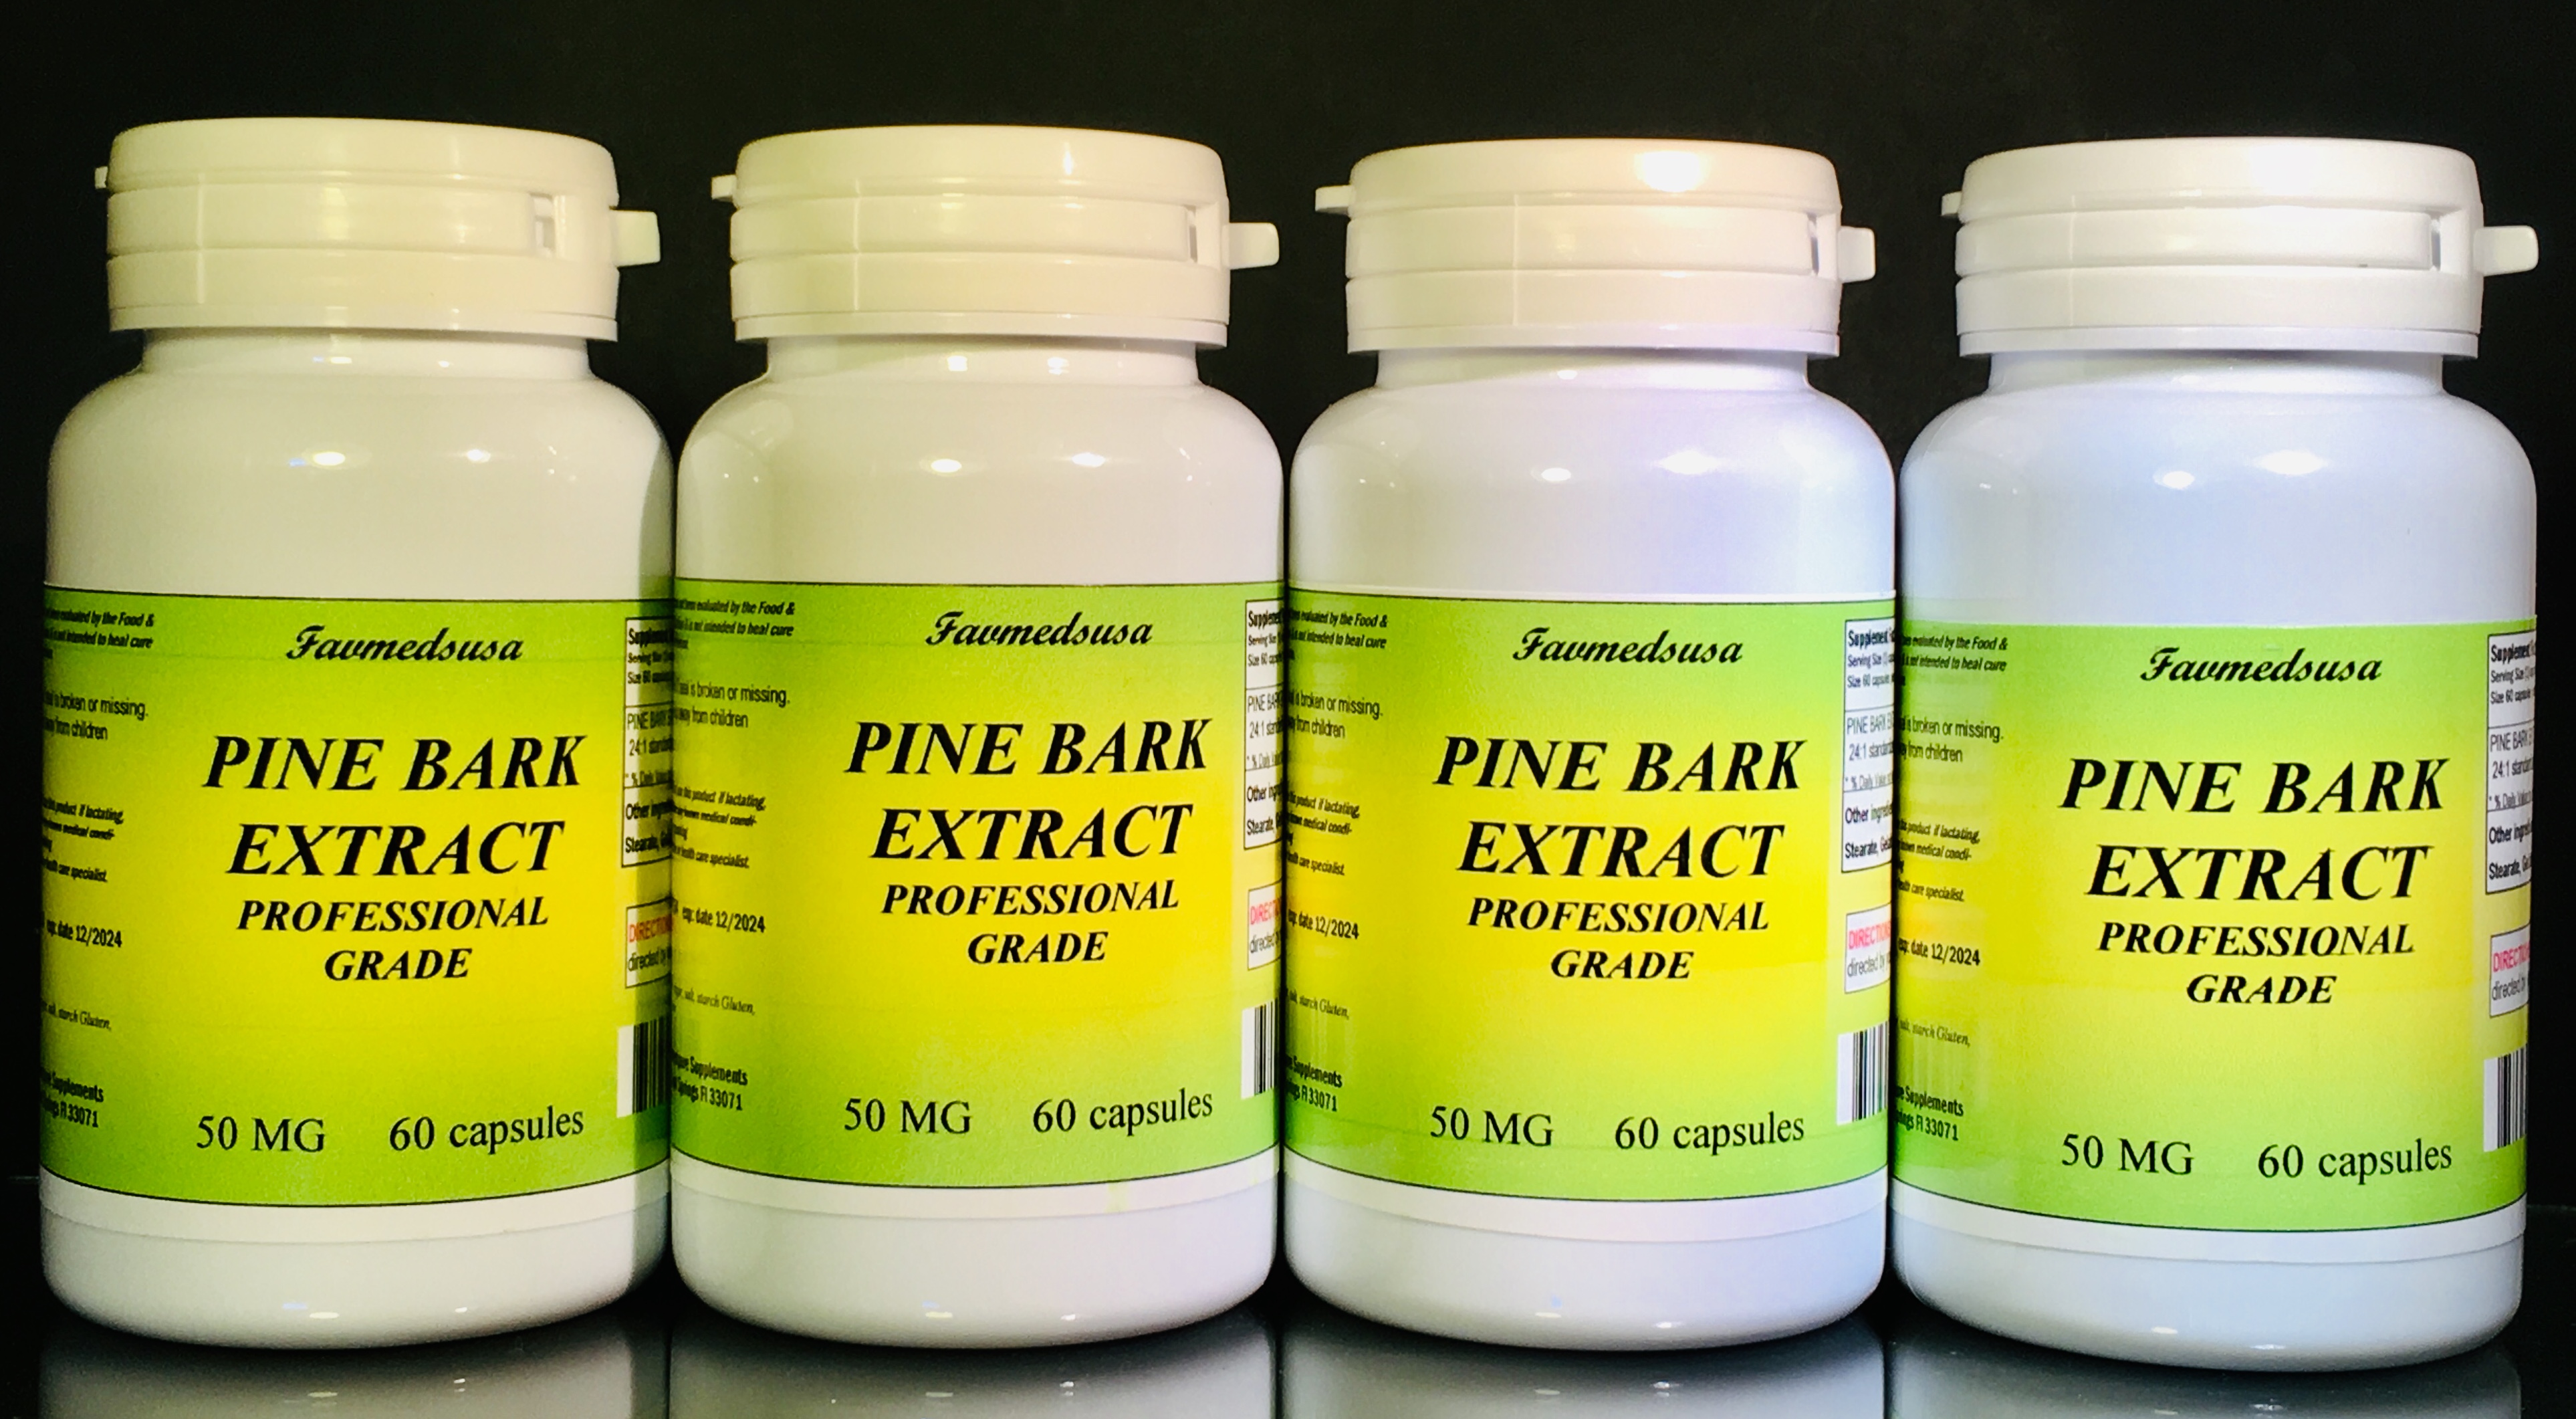 Pine Bark Extract 50mg - 240 (4x60) capsules